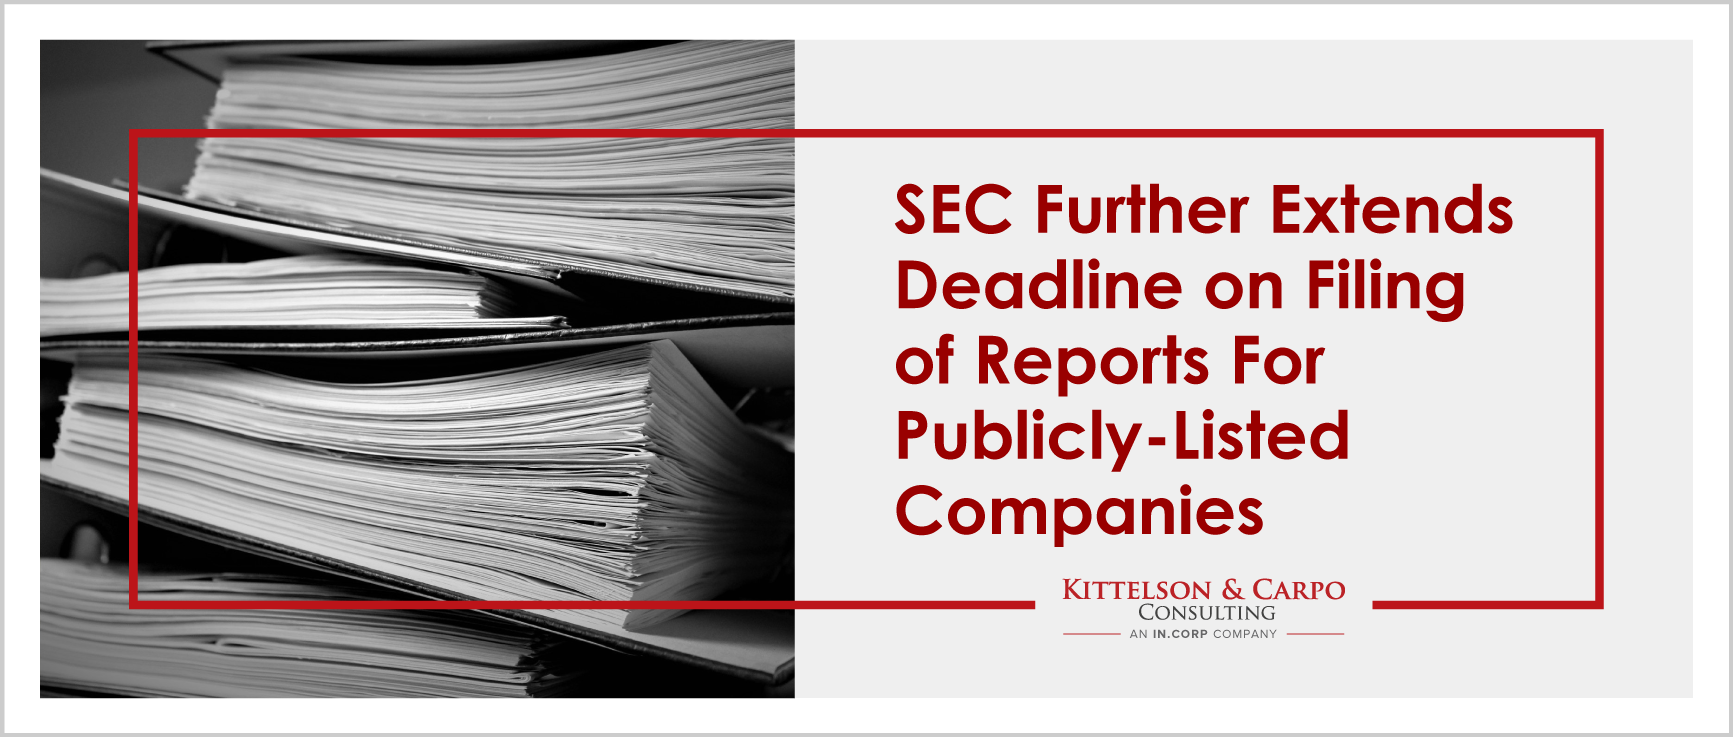 SEC Extended Deadlines